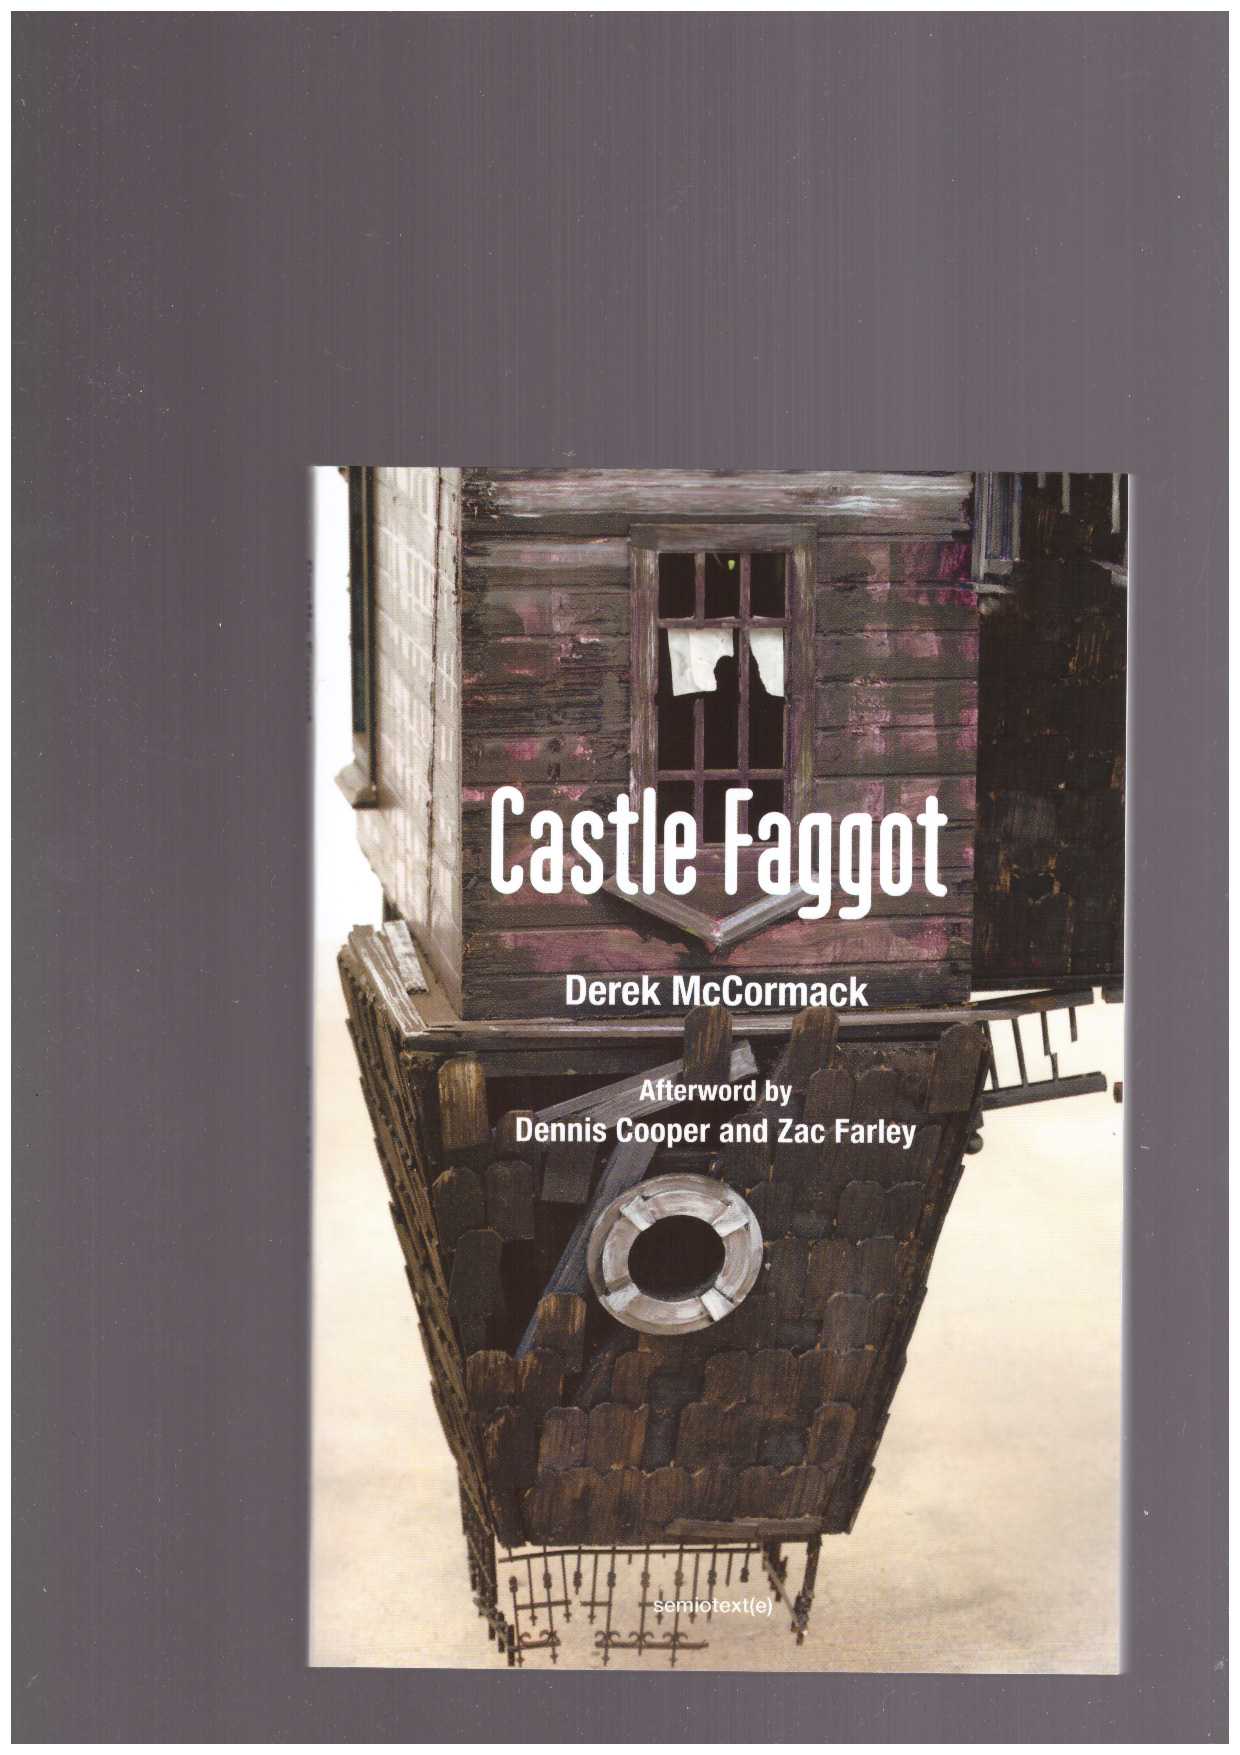 McCORMACK, Derek - Castle Faggot